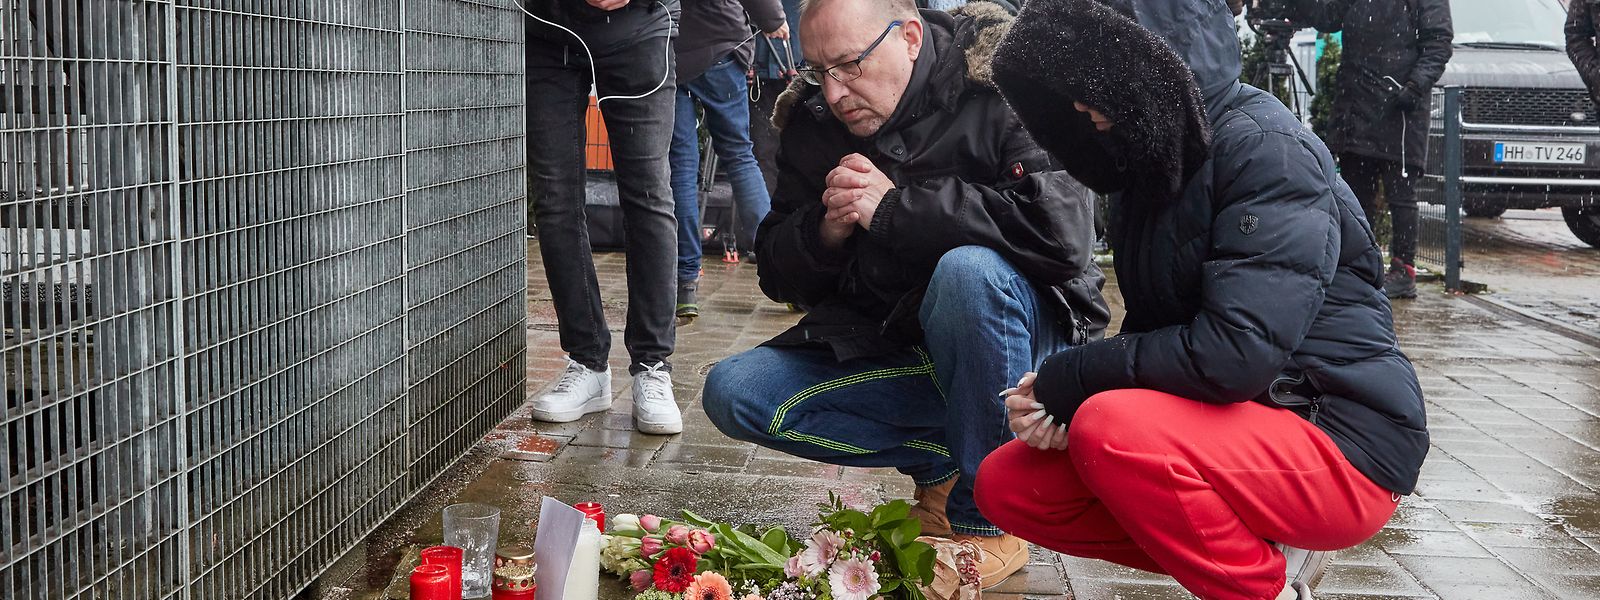 Ein Mann betet vor dem Gebäude der Zeugen Jehovas im Hamburger Stadtteil Alsterdorf. Bei einem Amoklauf während einer Veranstaltung der Zeugen Jehovas sind am Donnerstagabend mehrere Menschen getötet und einige Personen verletzt worden.